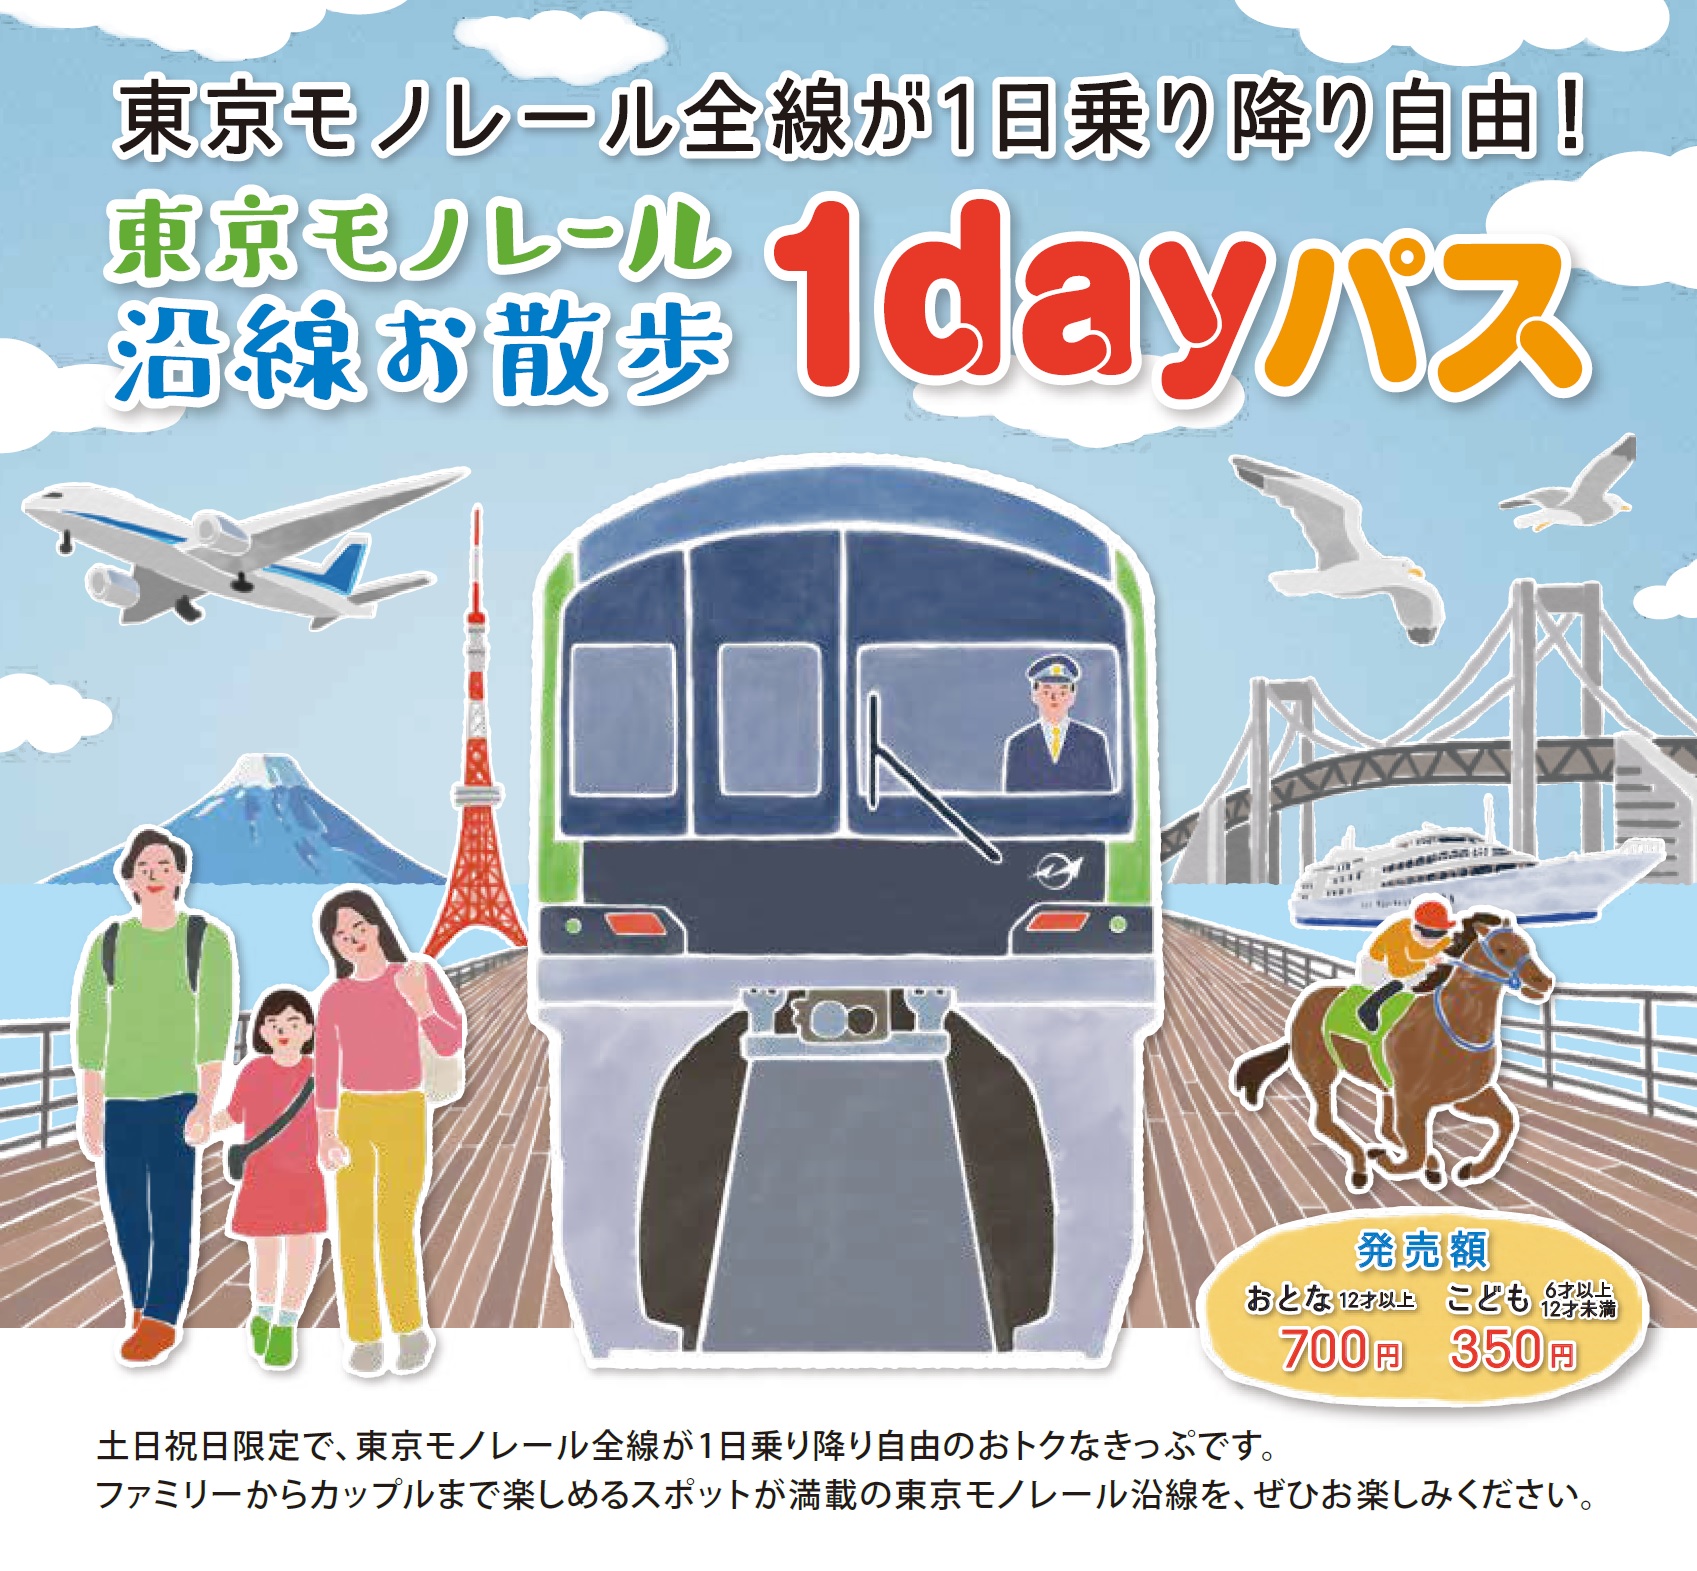 东京单轨电车沿线散步1日周游券